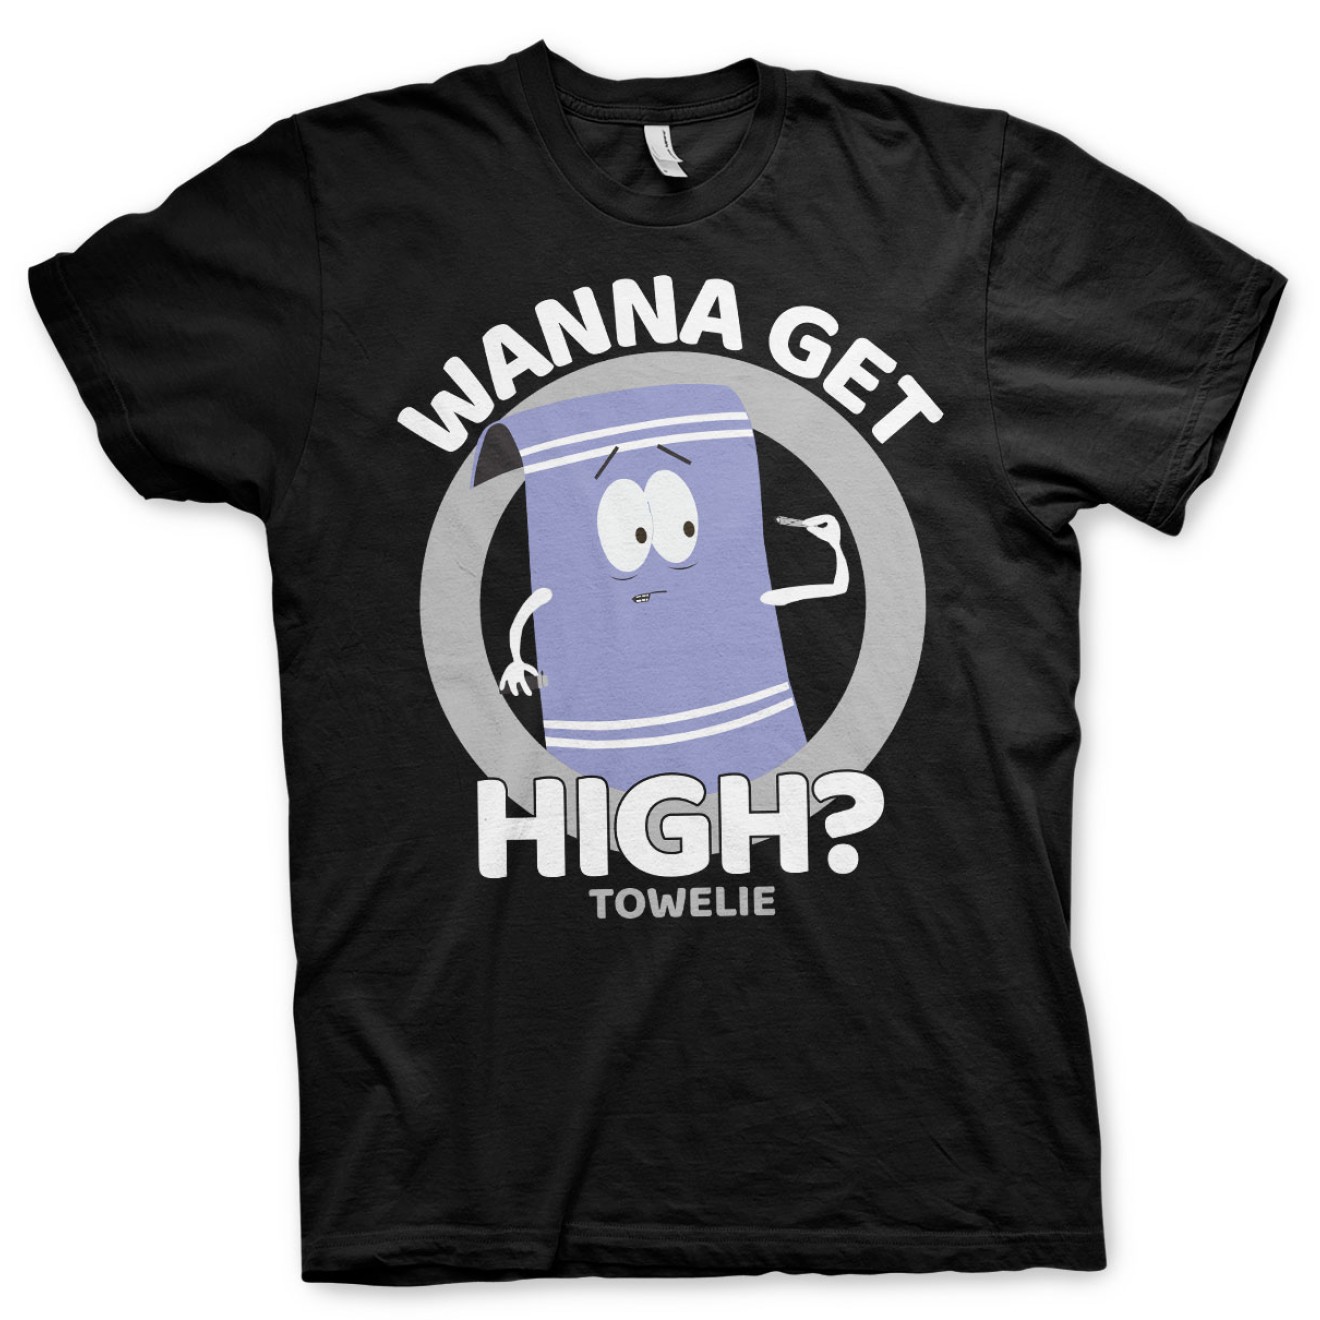 South Park T-Shirt Towelie Wanna Get High